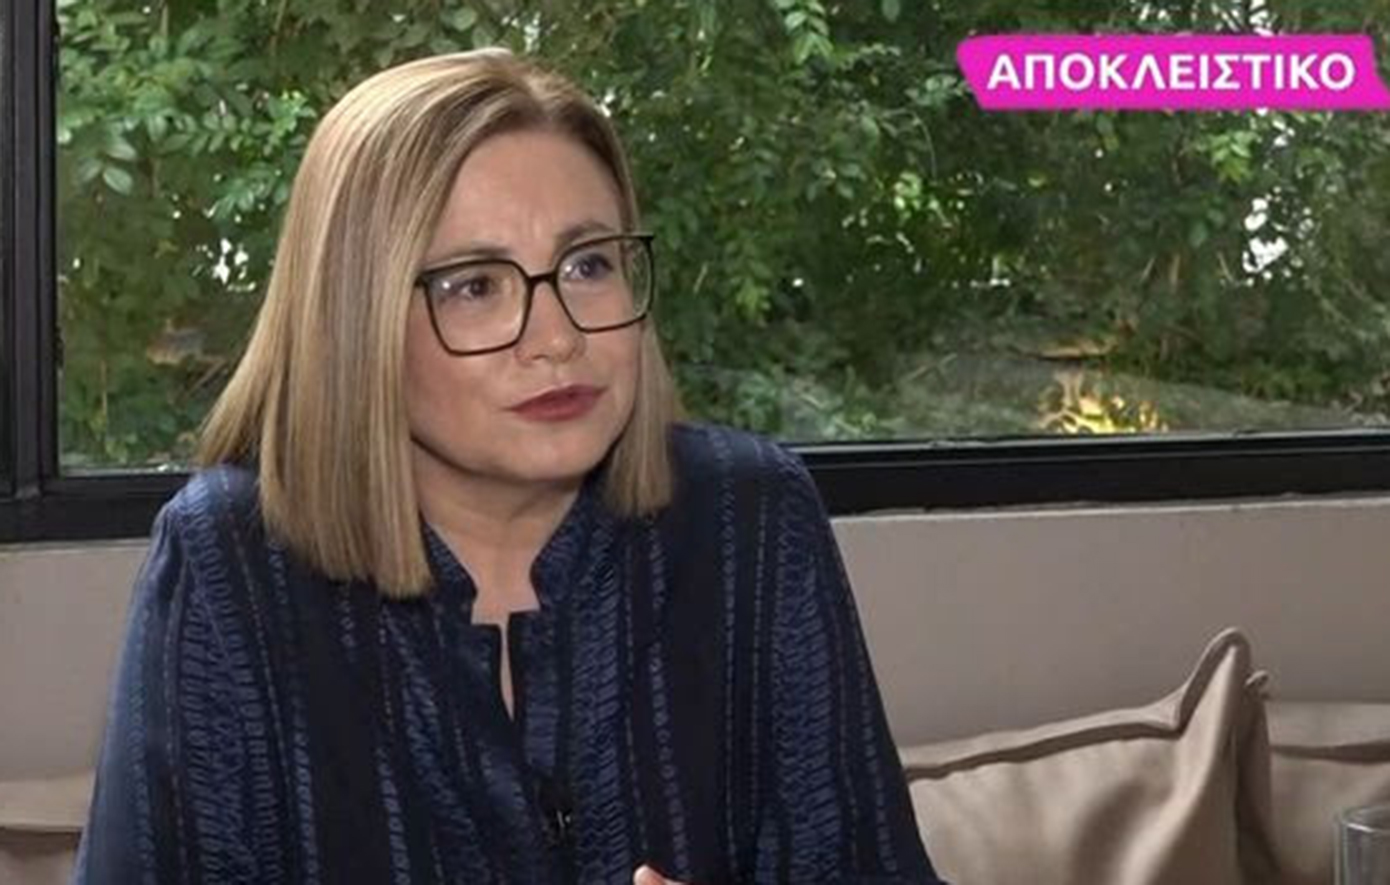 Μαρία Σπυράκη: Ανακάλυψα ότι απέβαλα με έναν πολύ βίαιο τρόπο